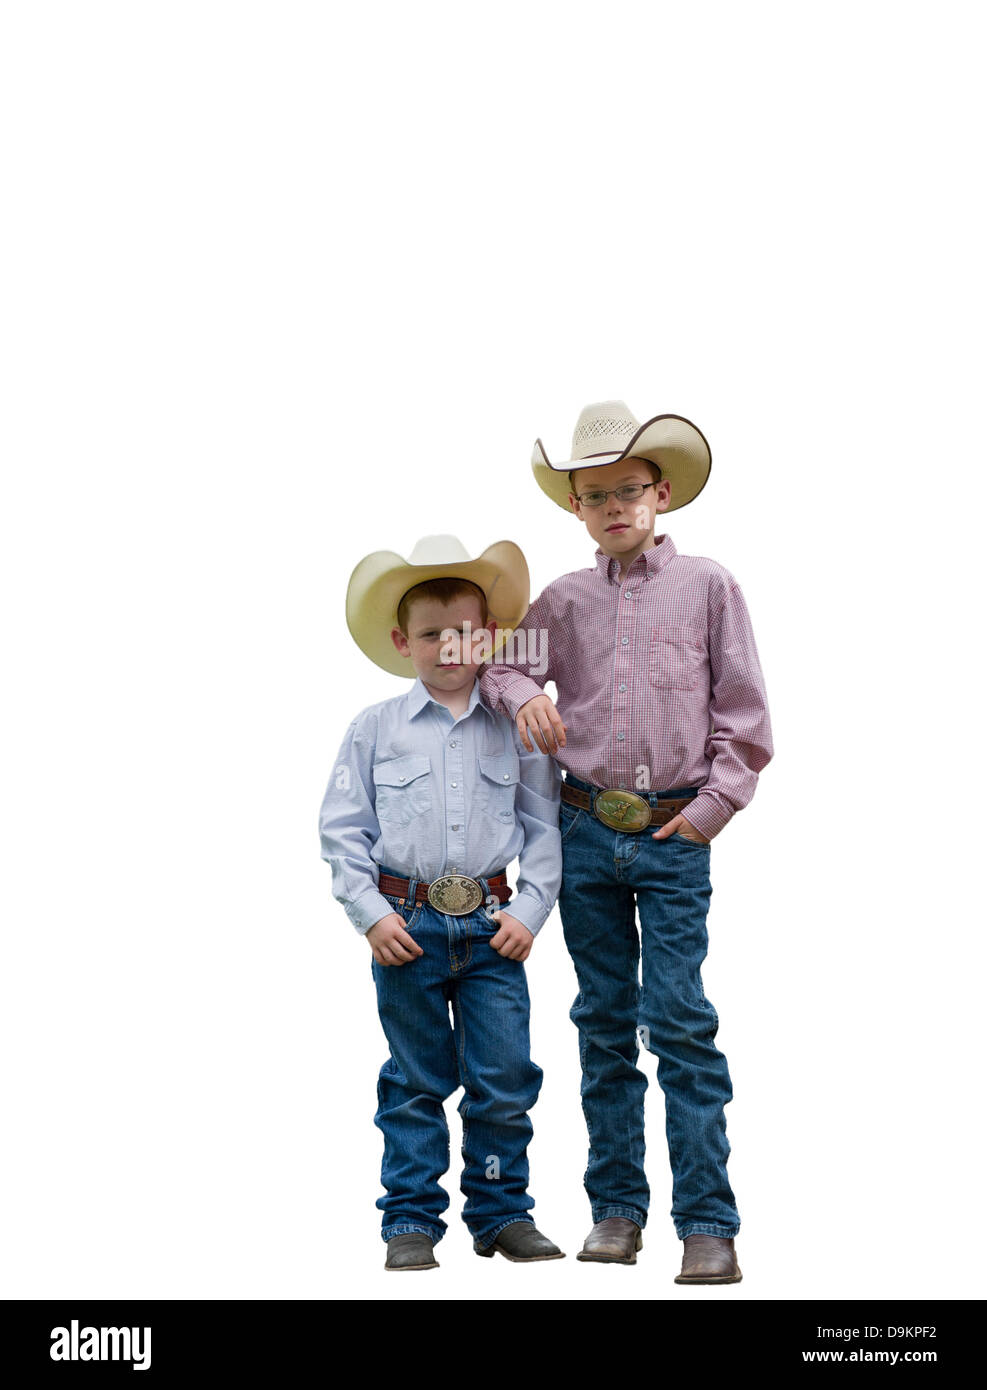 Dos jóvenes vaqueros en un backgorund blanco mirando a la cámara. Uno tiene sus brazos sobre los hombros de otros. Foto de stock